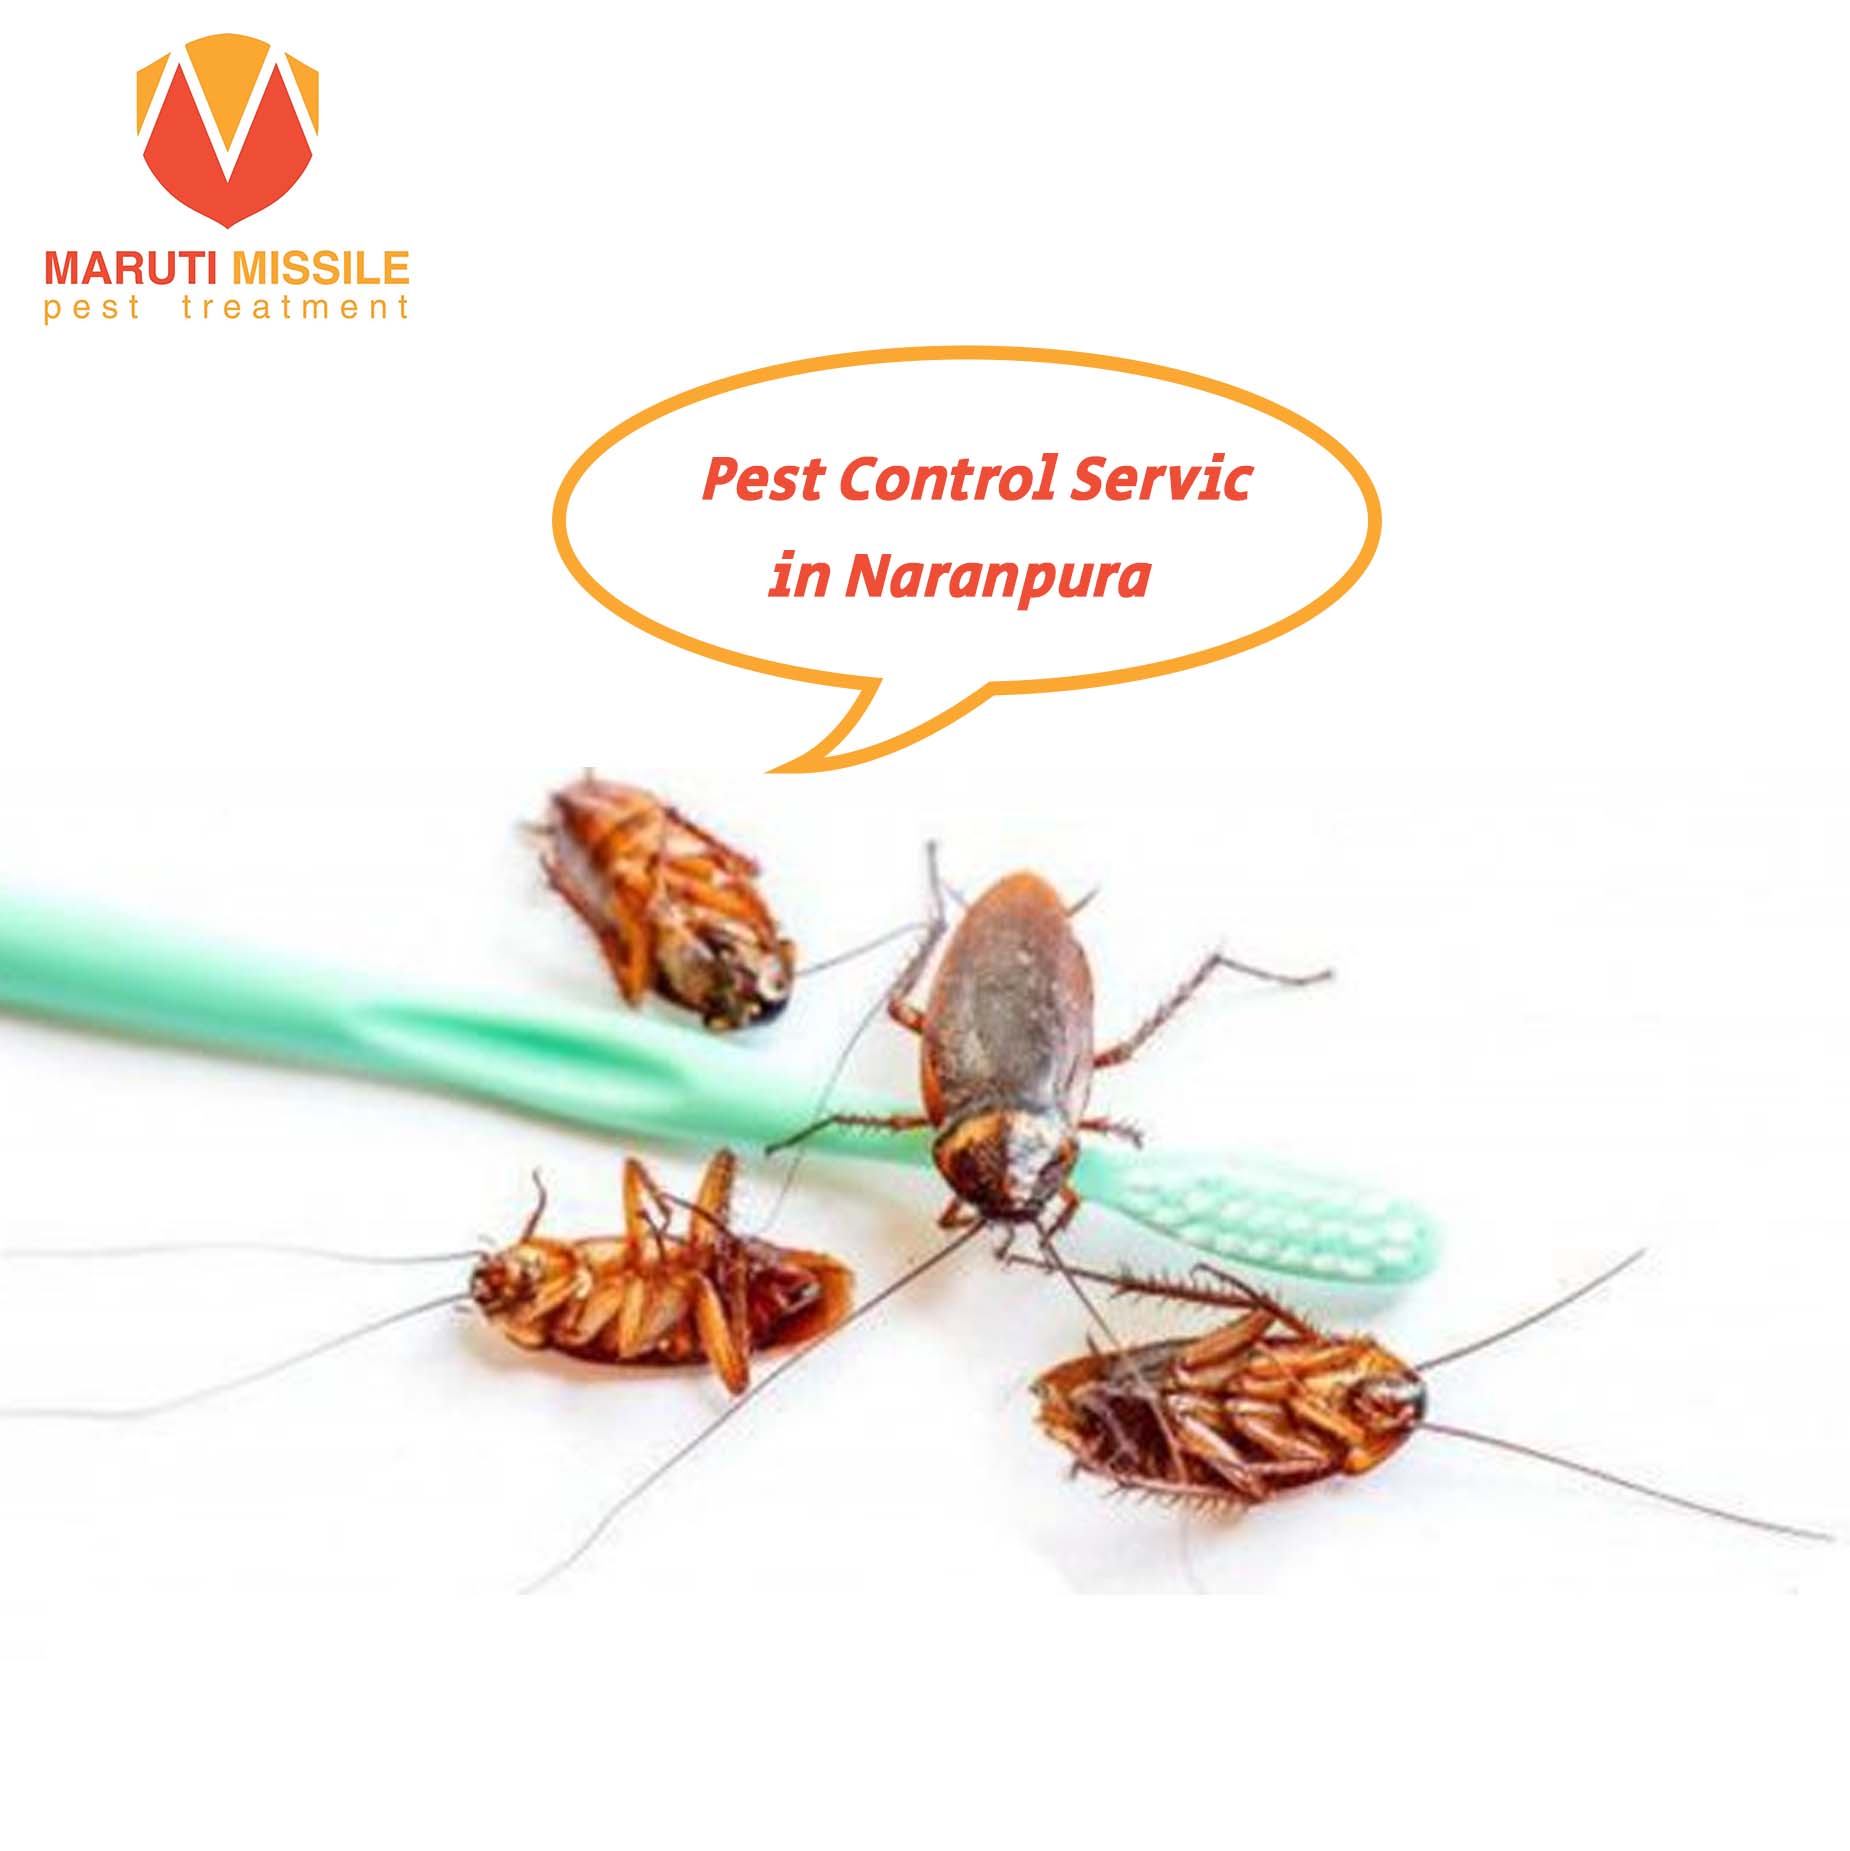 Pest Control Service in Naranpura